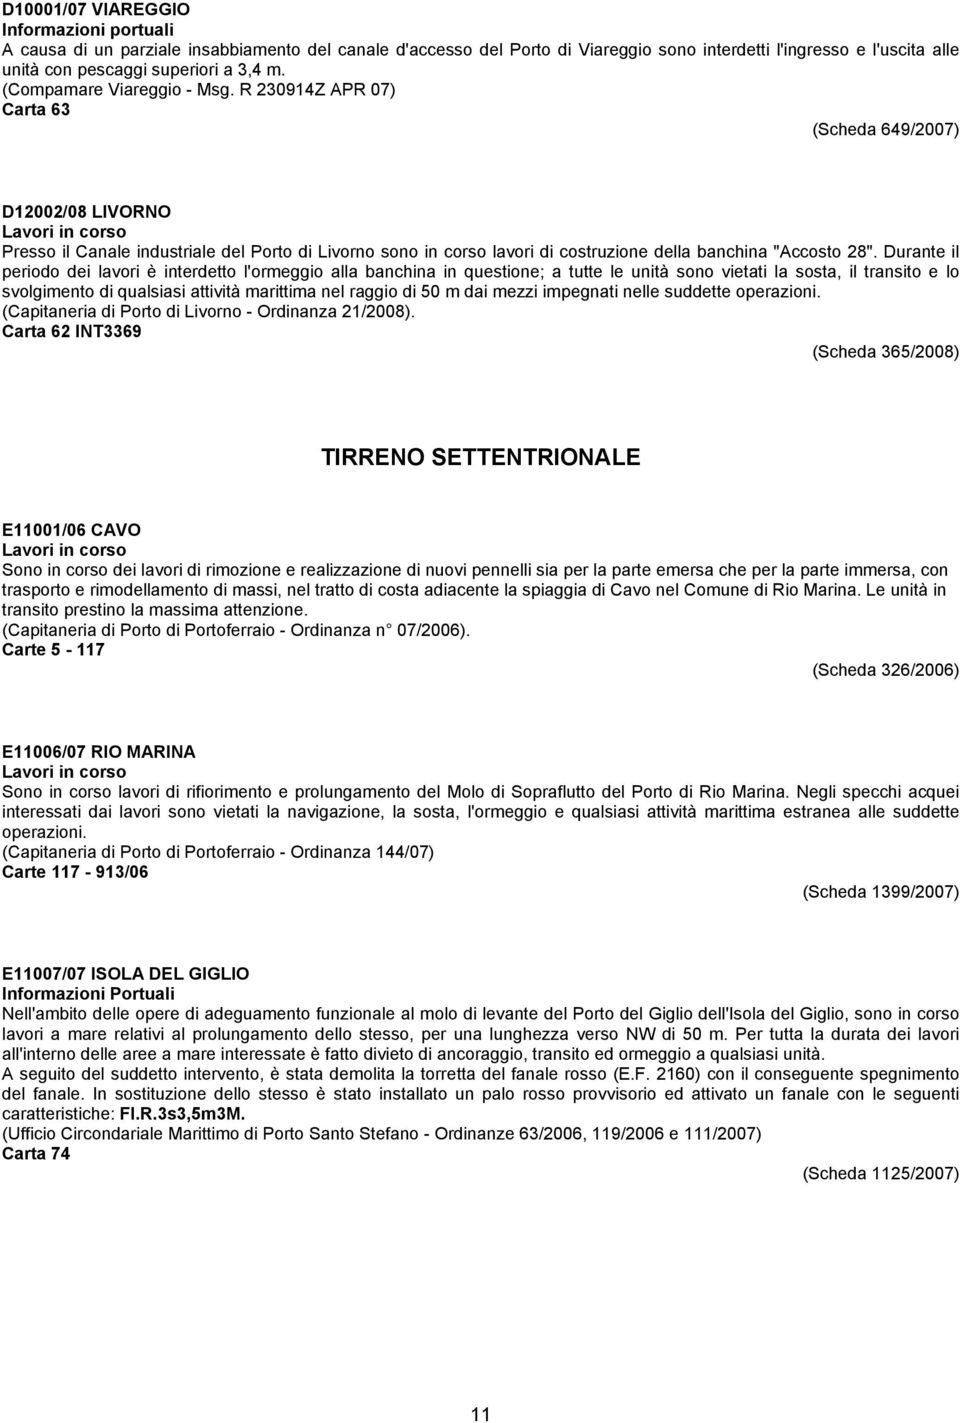 R 230914Z APR 07) Carta 63 (Scheda 649/2007) D12002/08 LIVORNO Presso il Canale industriale del Porto di Livorno sono in corso lavori di costruzione della banchina "Accosto 28".